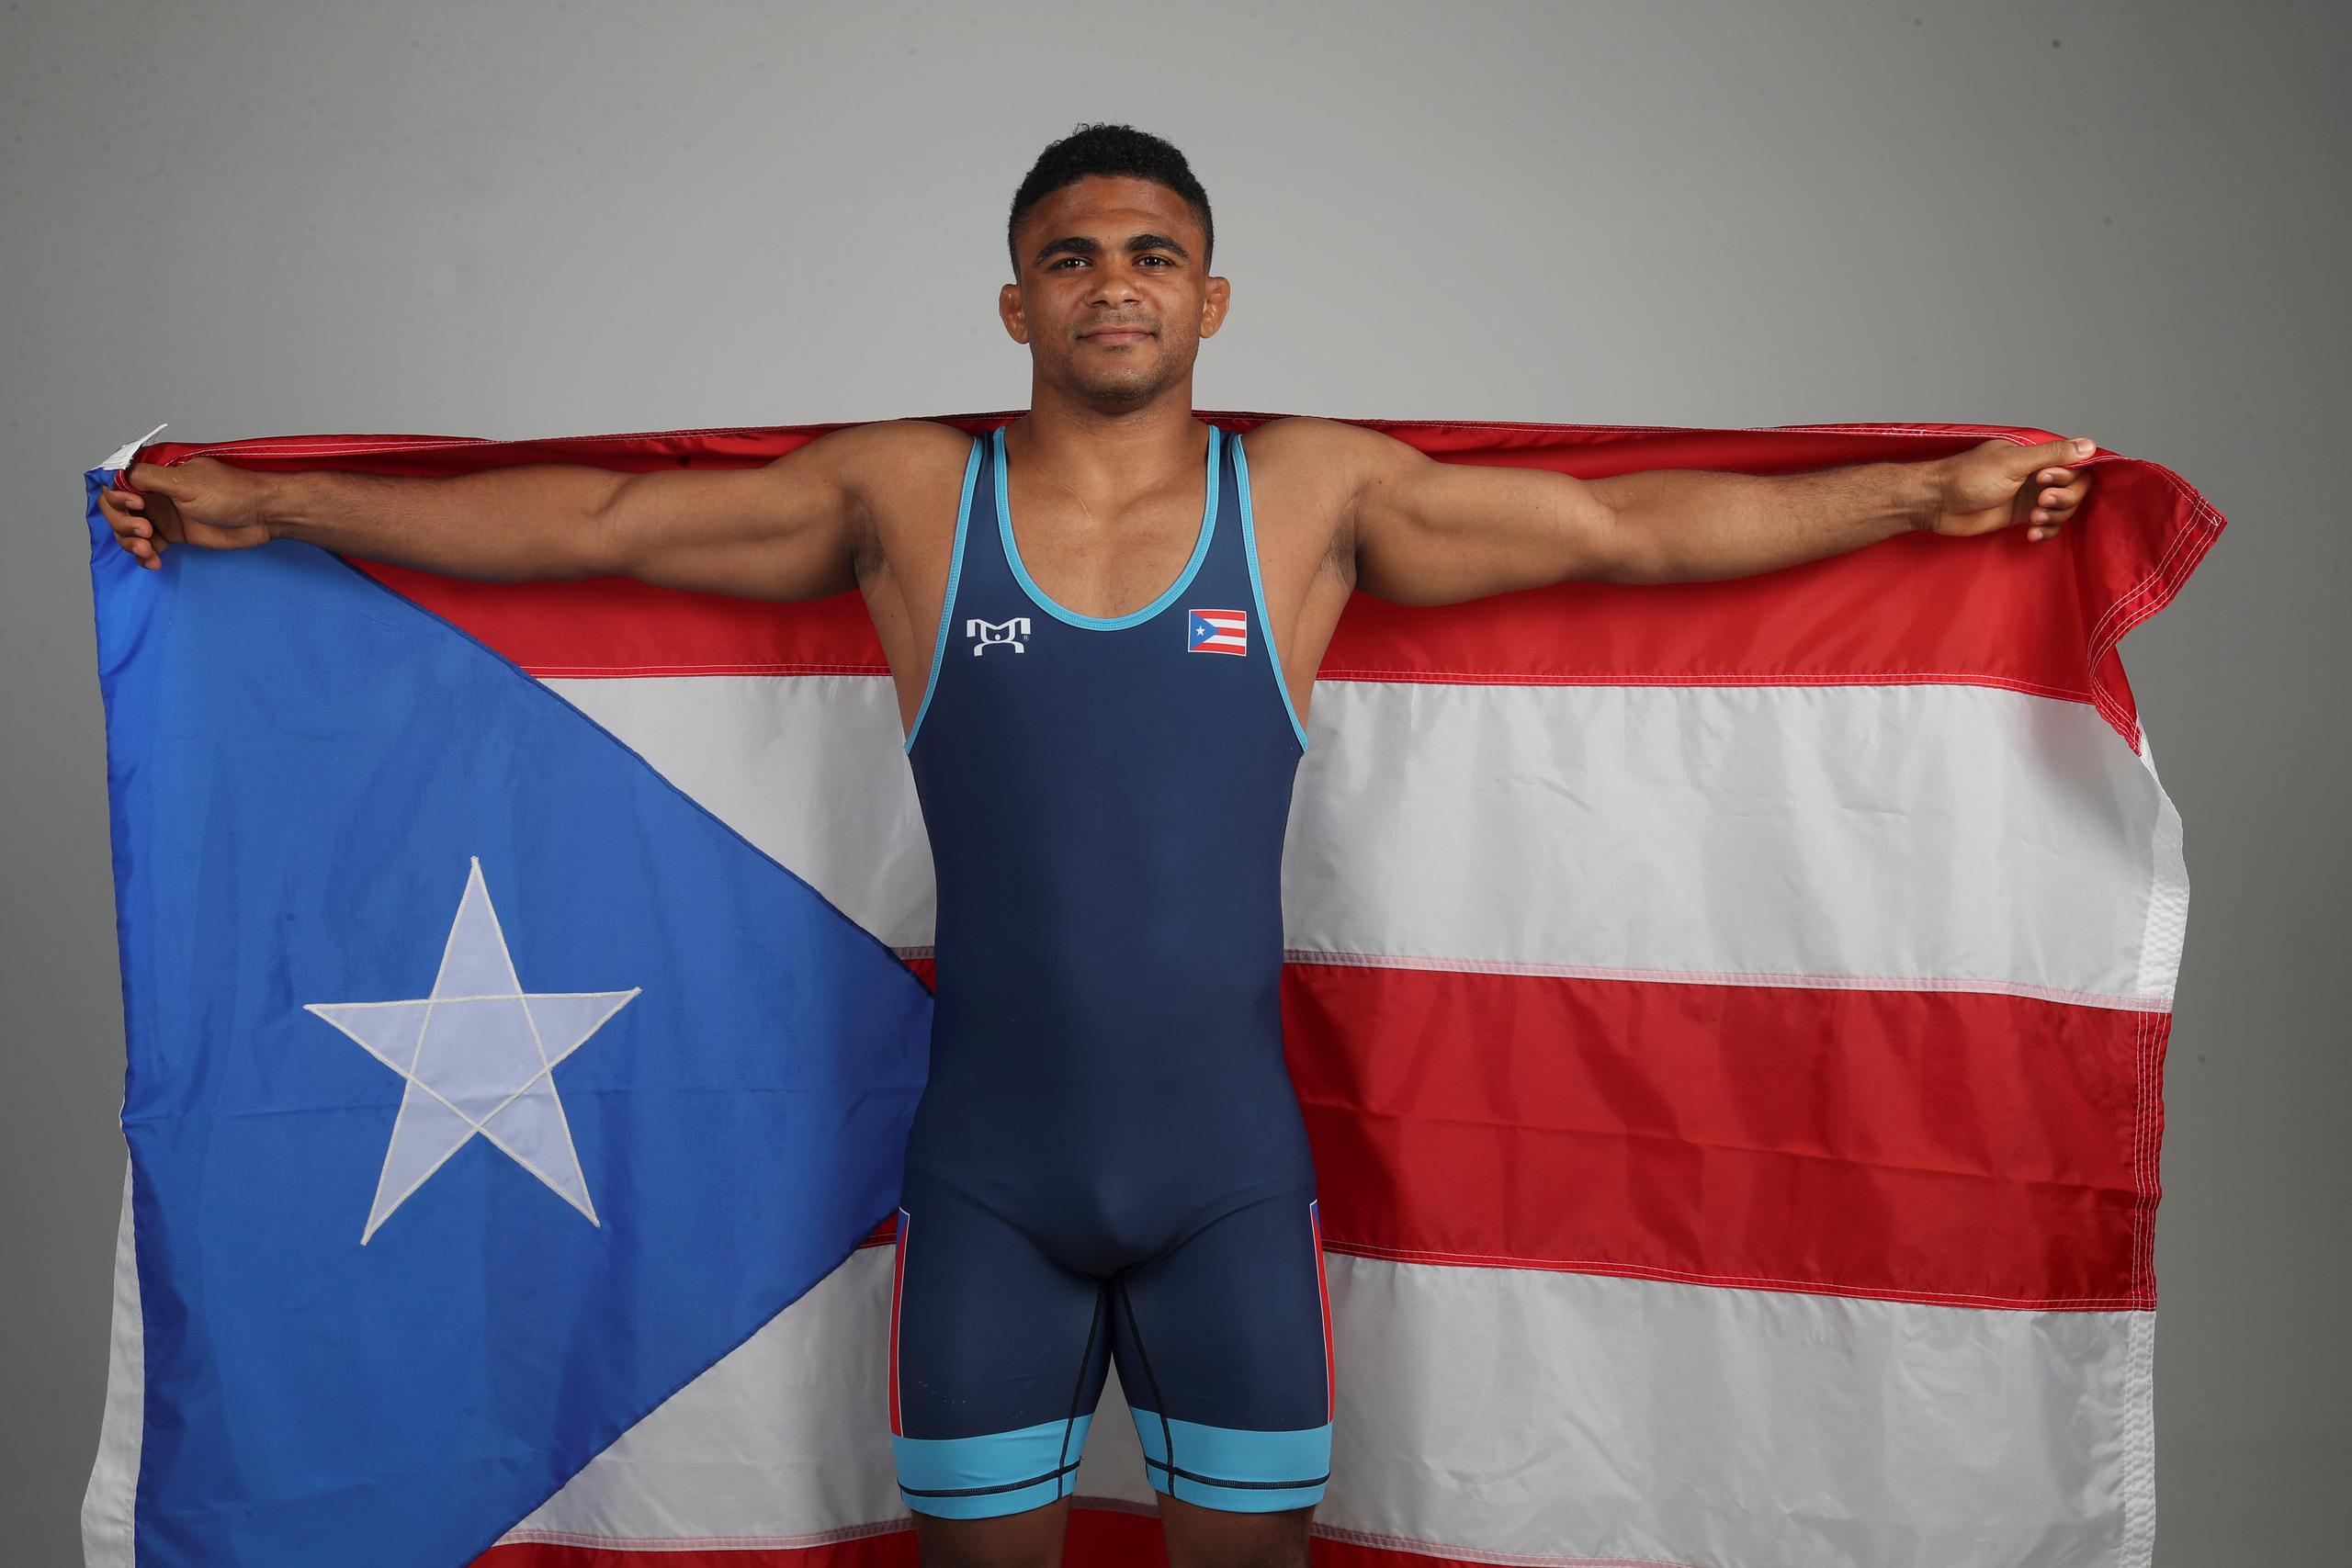 Franklin Gómez cargará la bandera de Puerto Rico en la apertura de los próximos Juegos Panamericanos de Lima 2019.